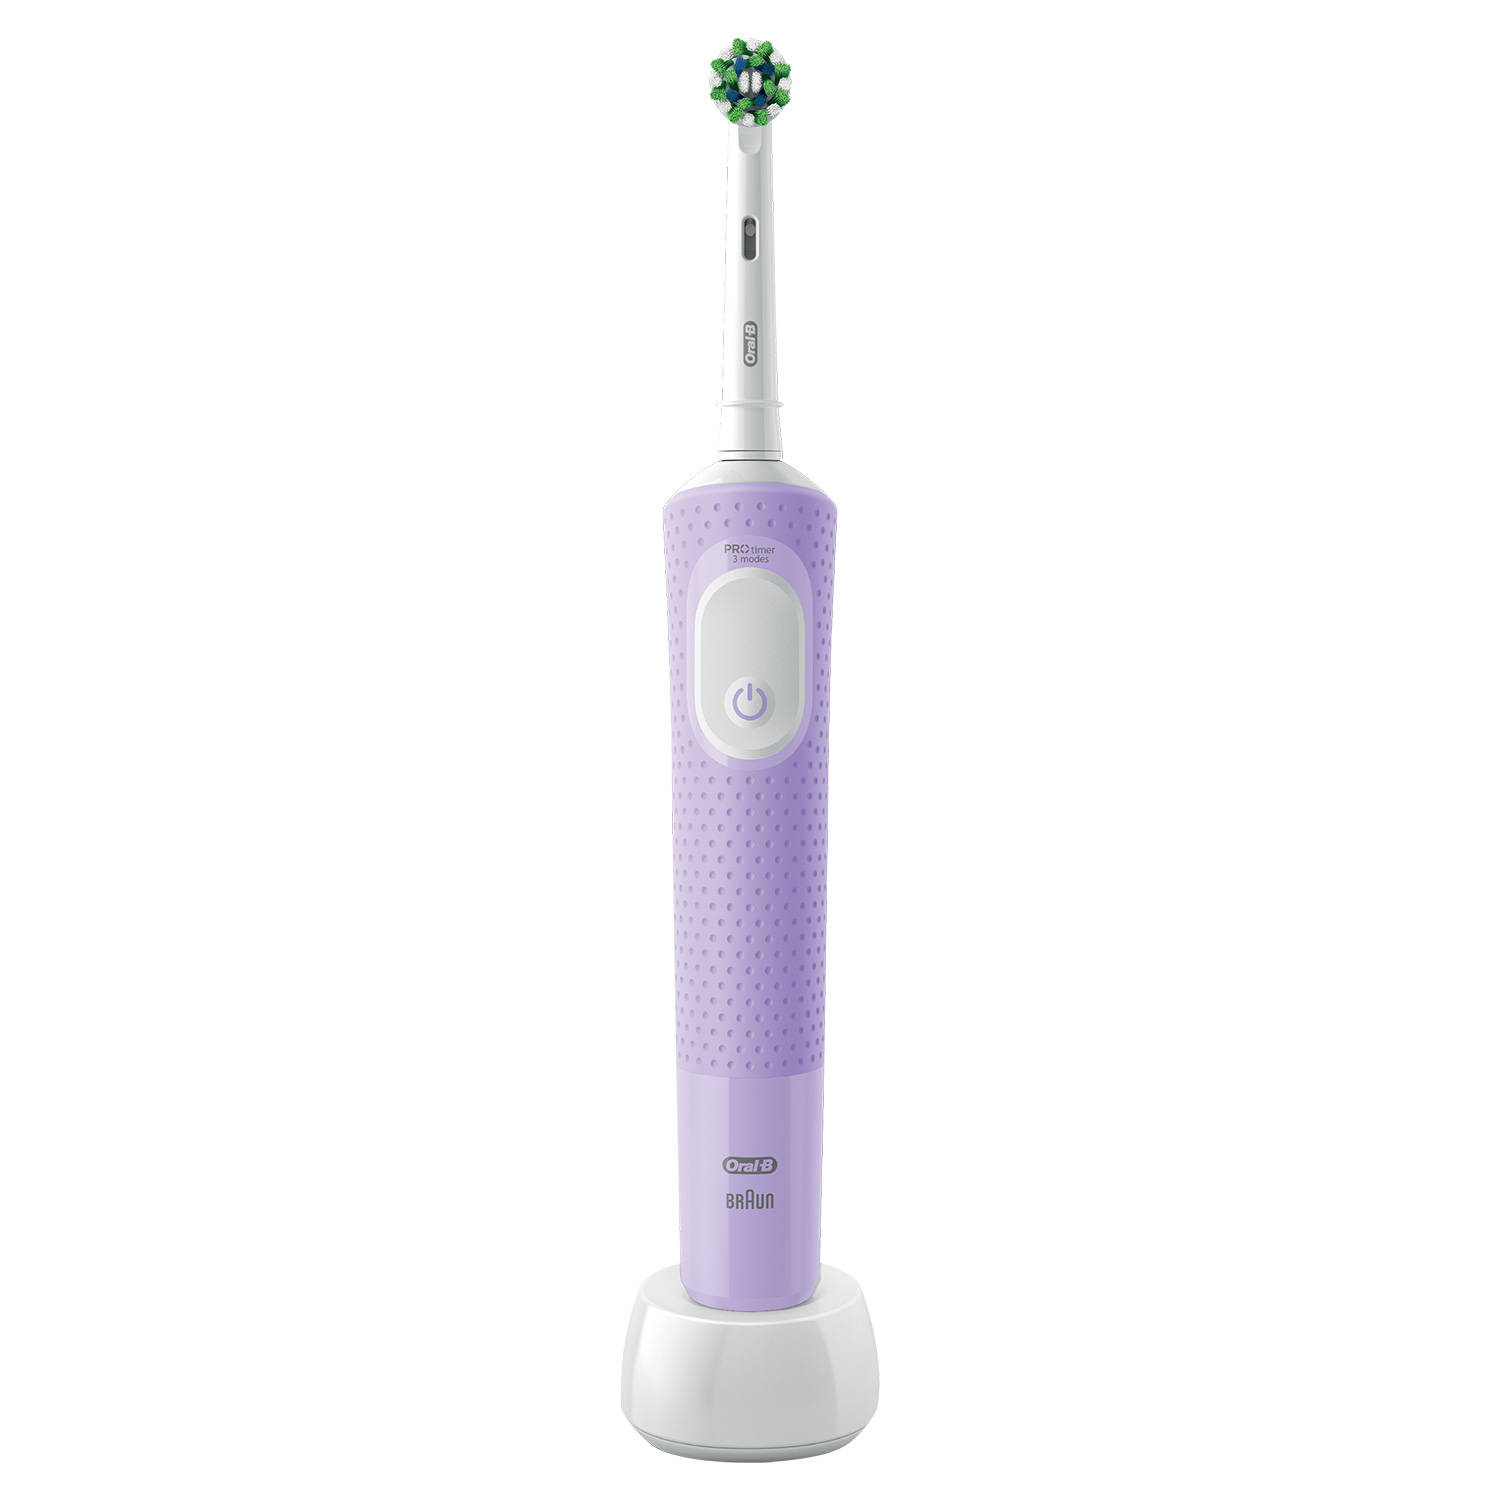 Onvergetelijk strottenhoofd stromen Oral-B elektrische tandenborstel Vitality Pro paars - 3 poetsstanden |  Blokker